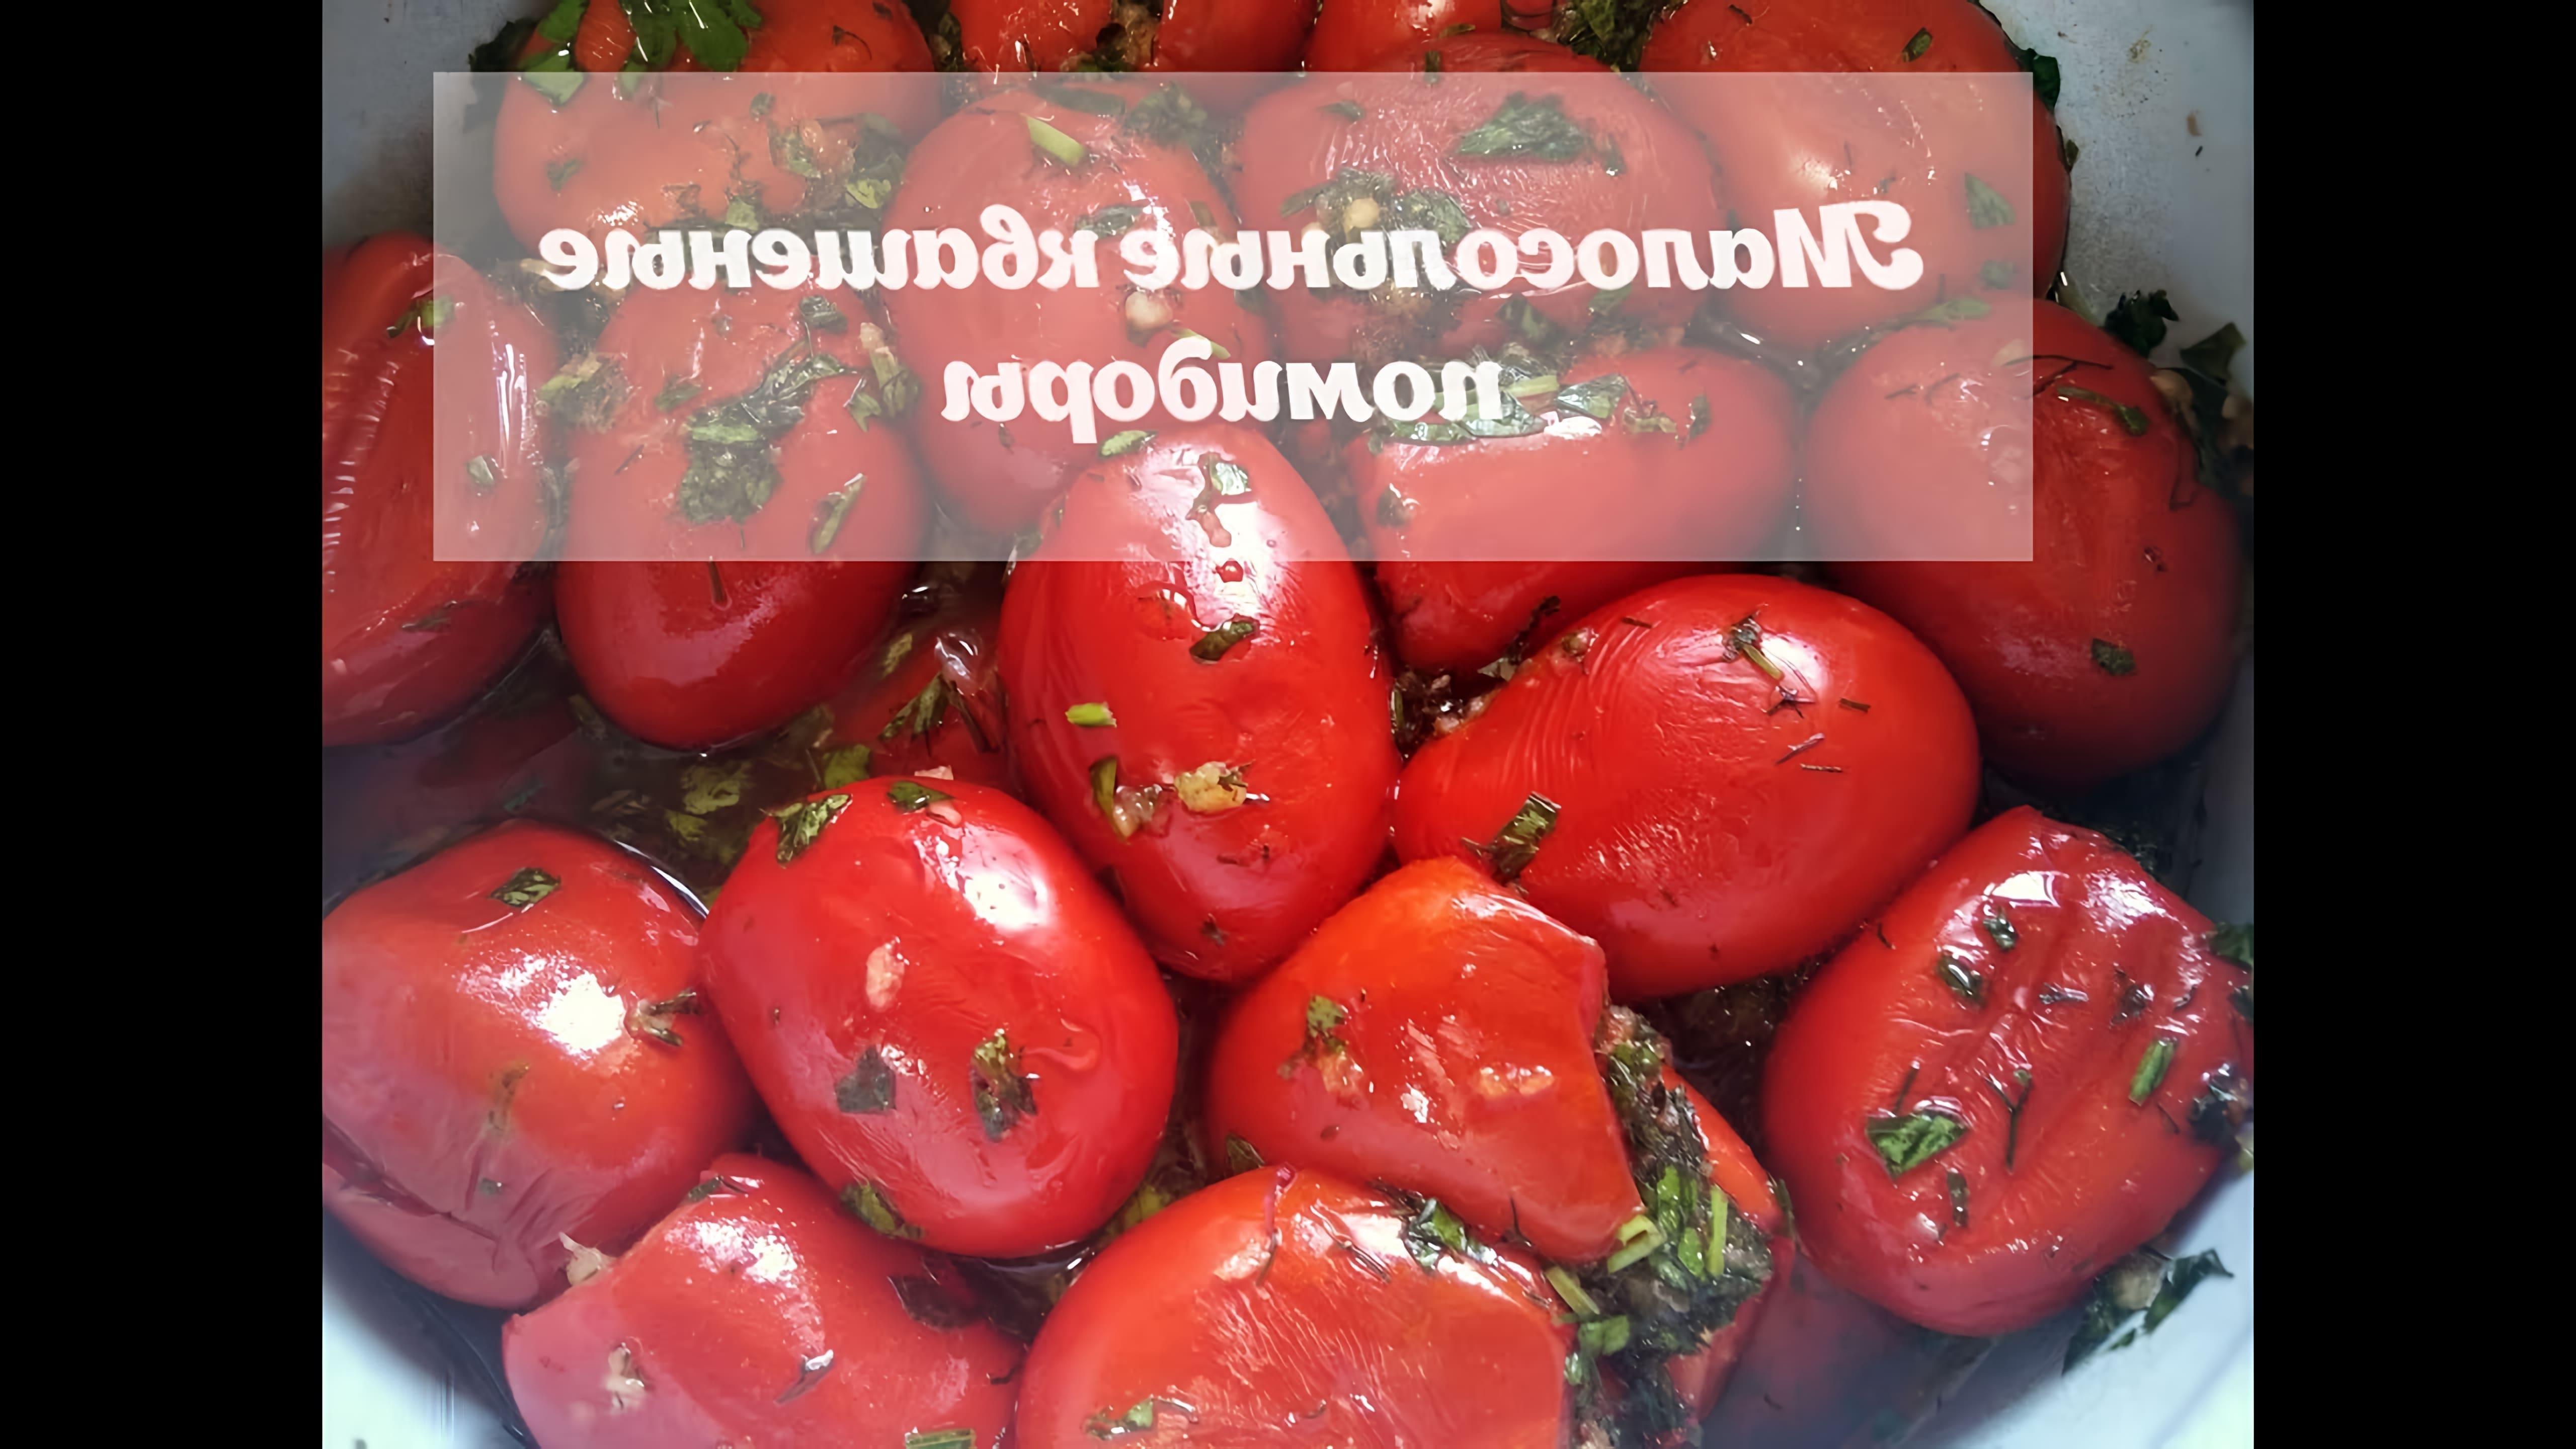 В этом видео демонстрируется процесс приготовления квашеных малосольных помидоров с зеленью и чесноком